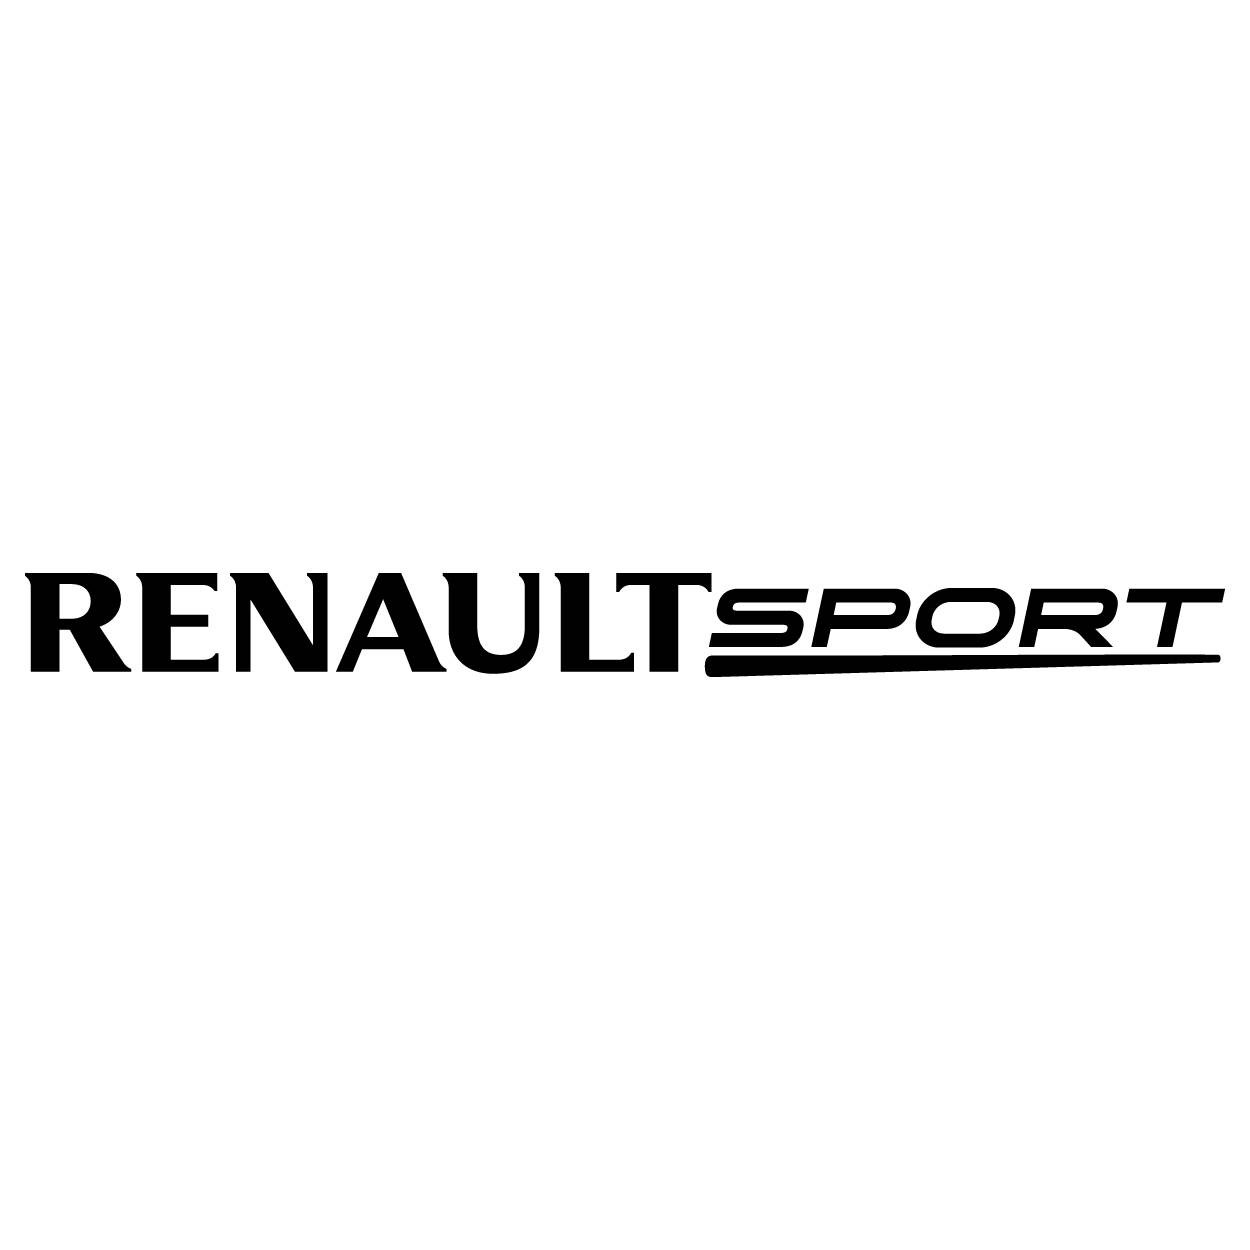 AUTOCOLLANT RENAULT SPORT -R. ACHETEZ DES AUTOCOLLANTS EN VINYLE.